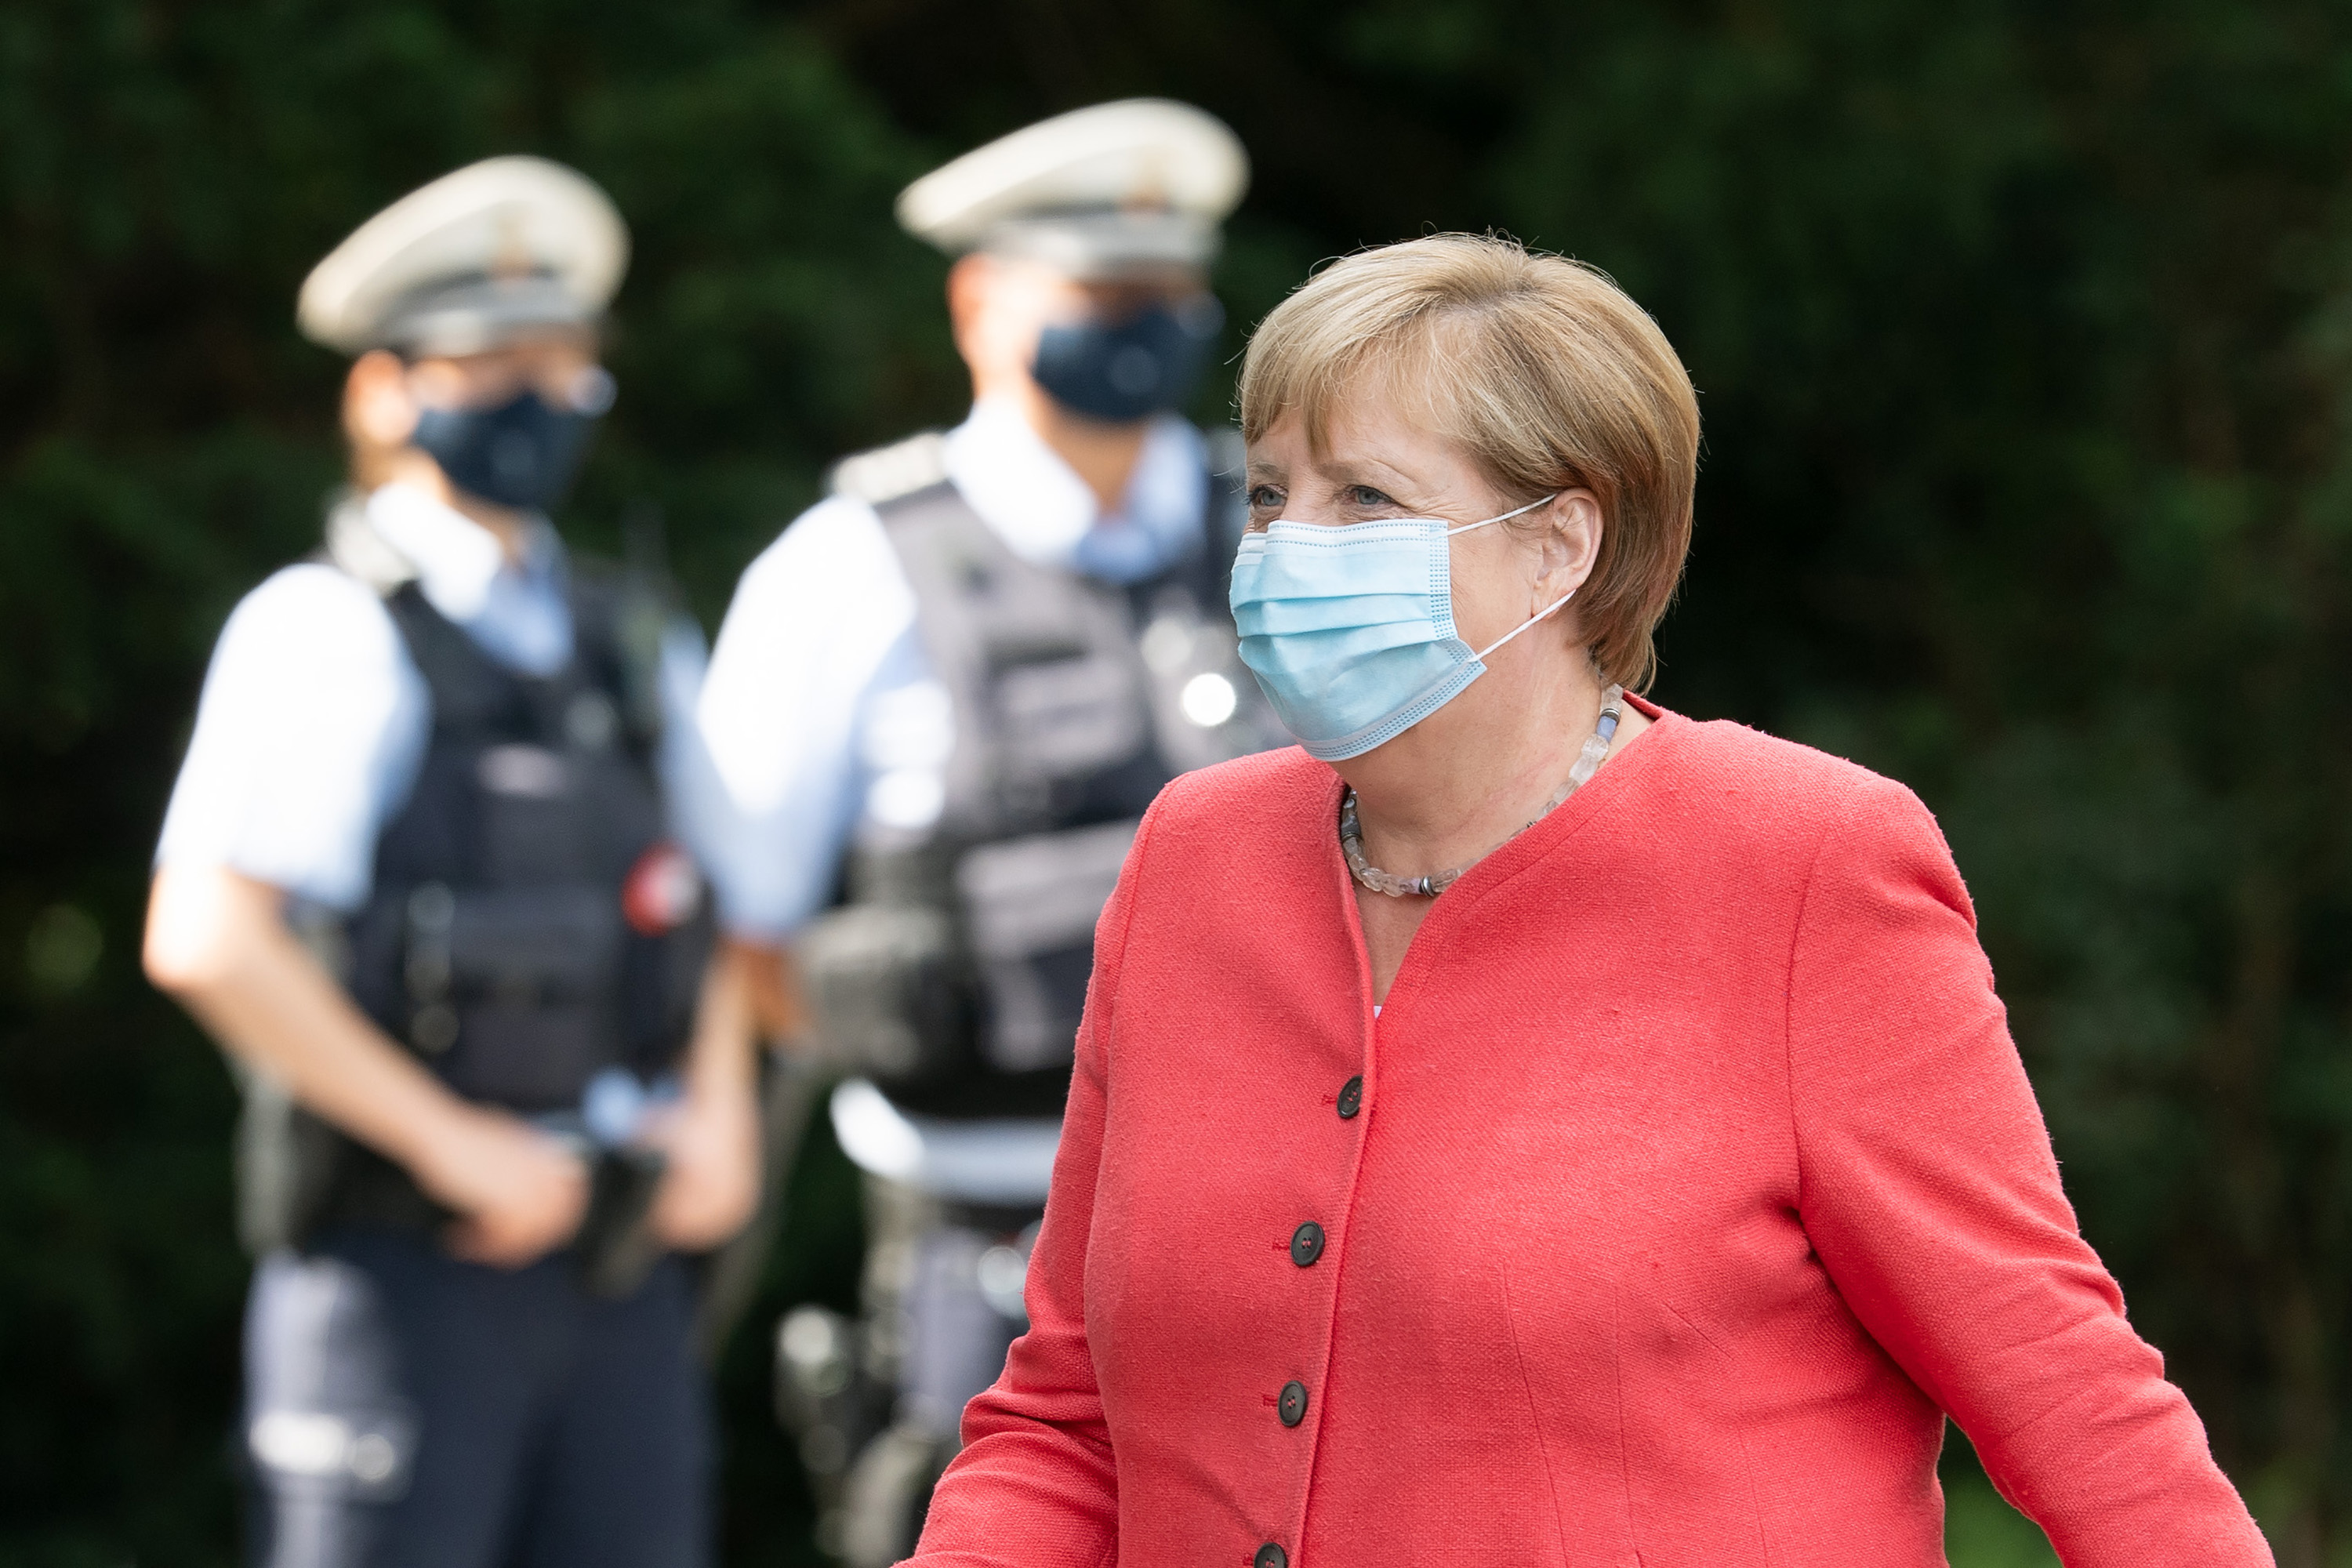 Angela Merkel in Dusseldorf on Aug. 18.